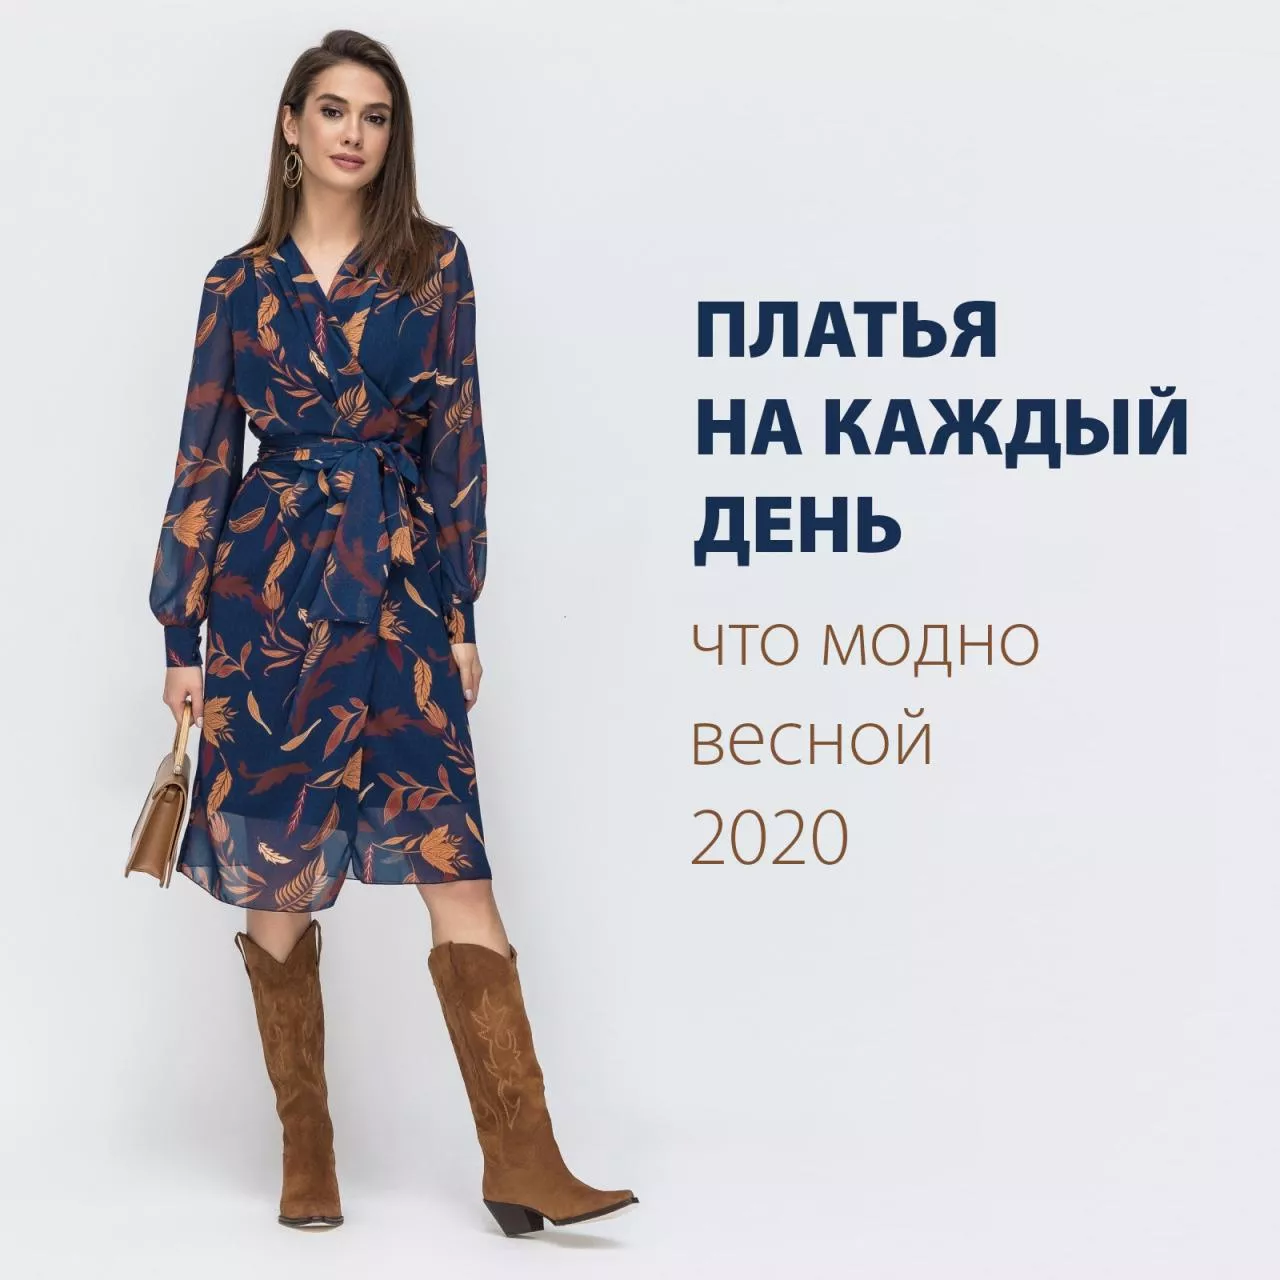 Платья на каждый день - что модно весной 2020